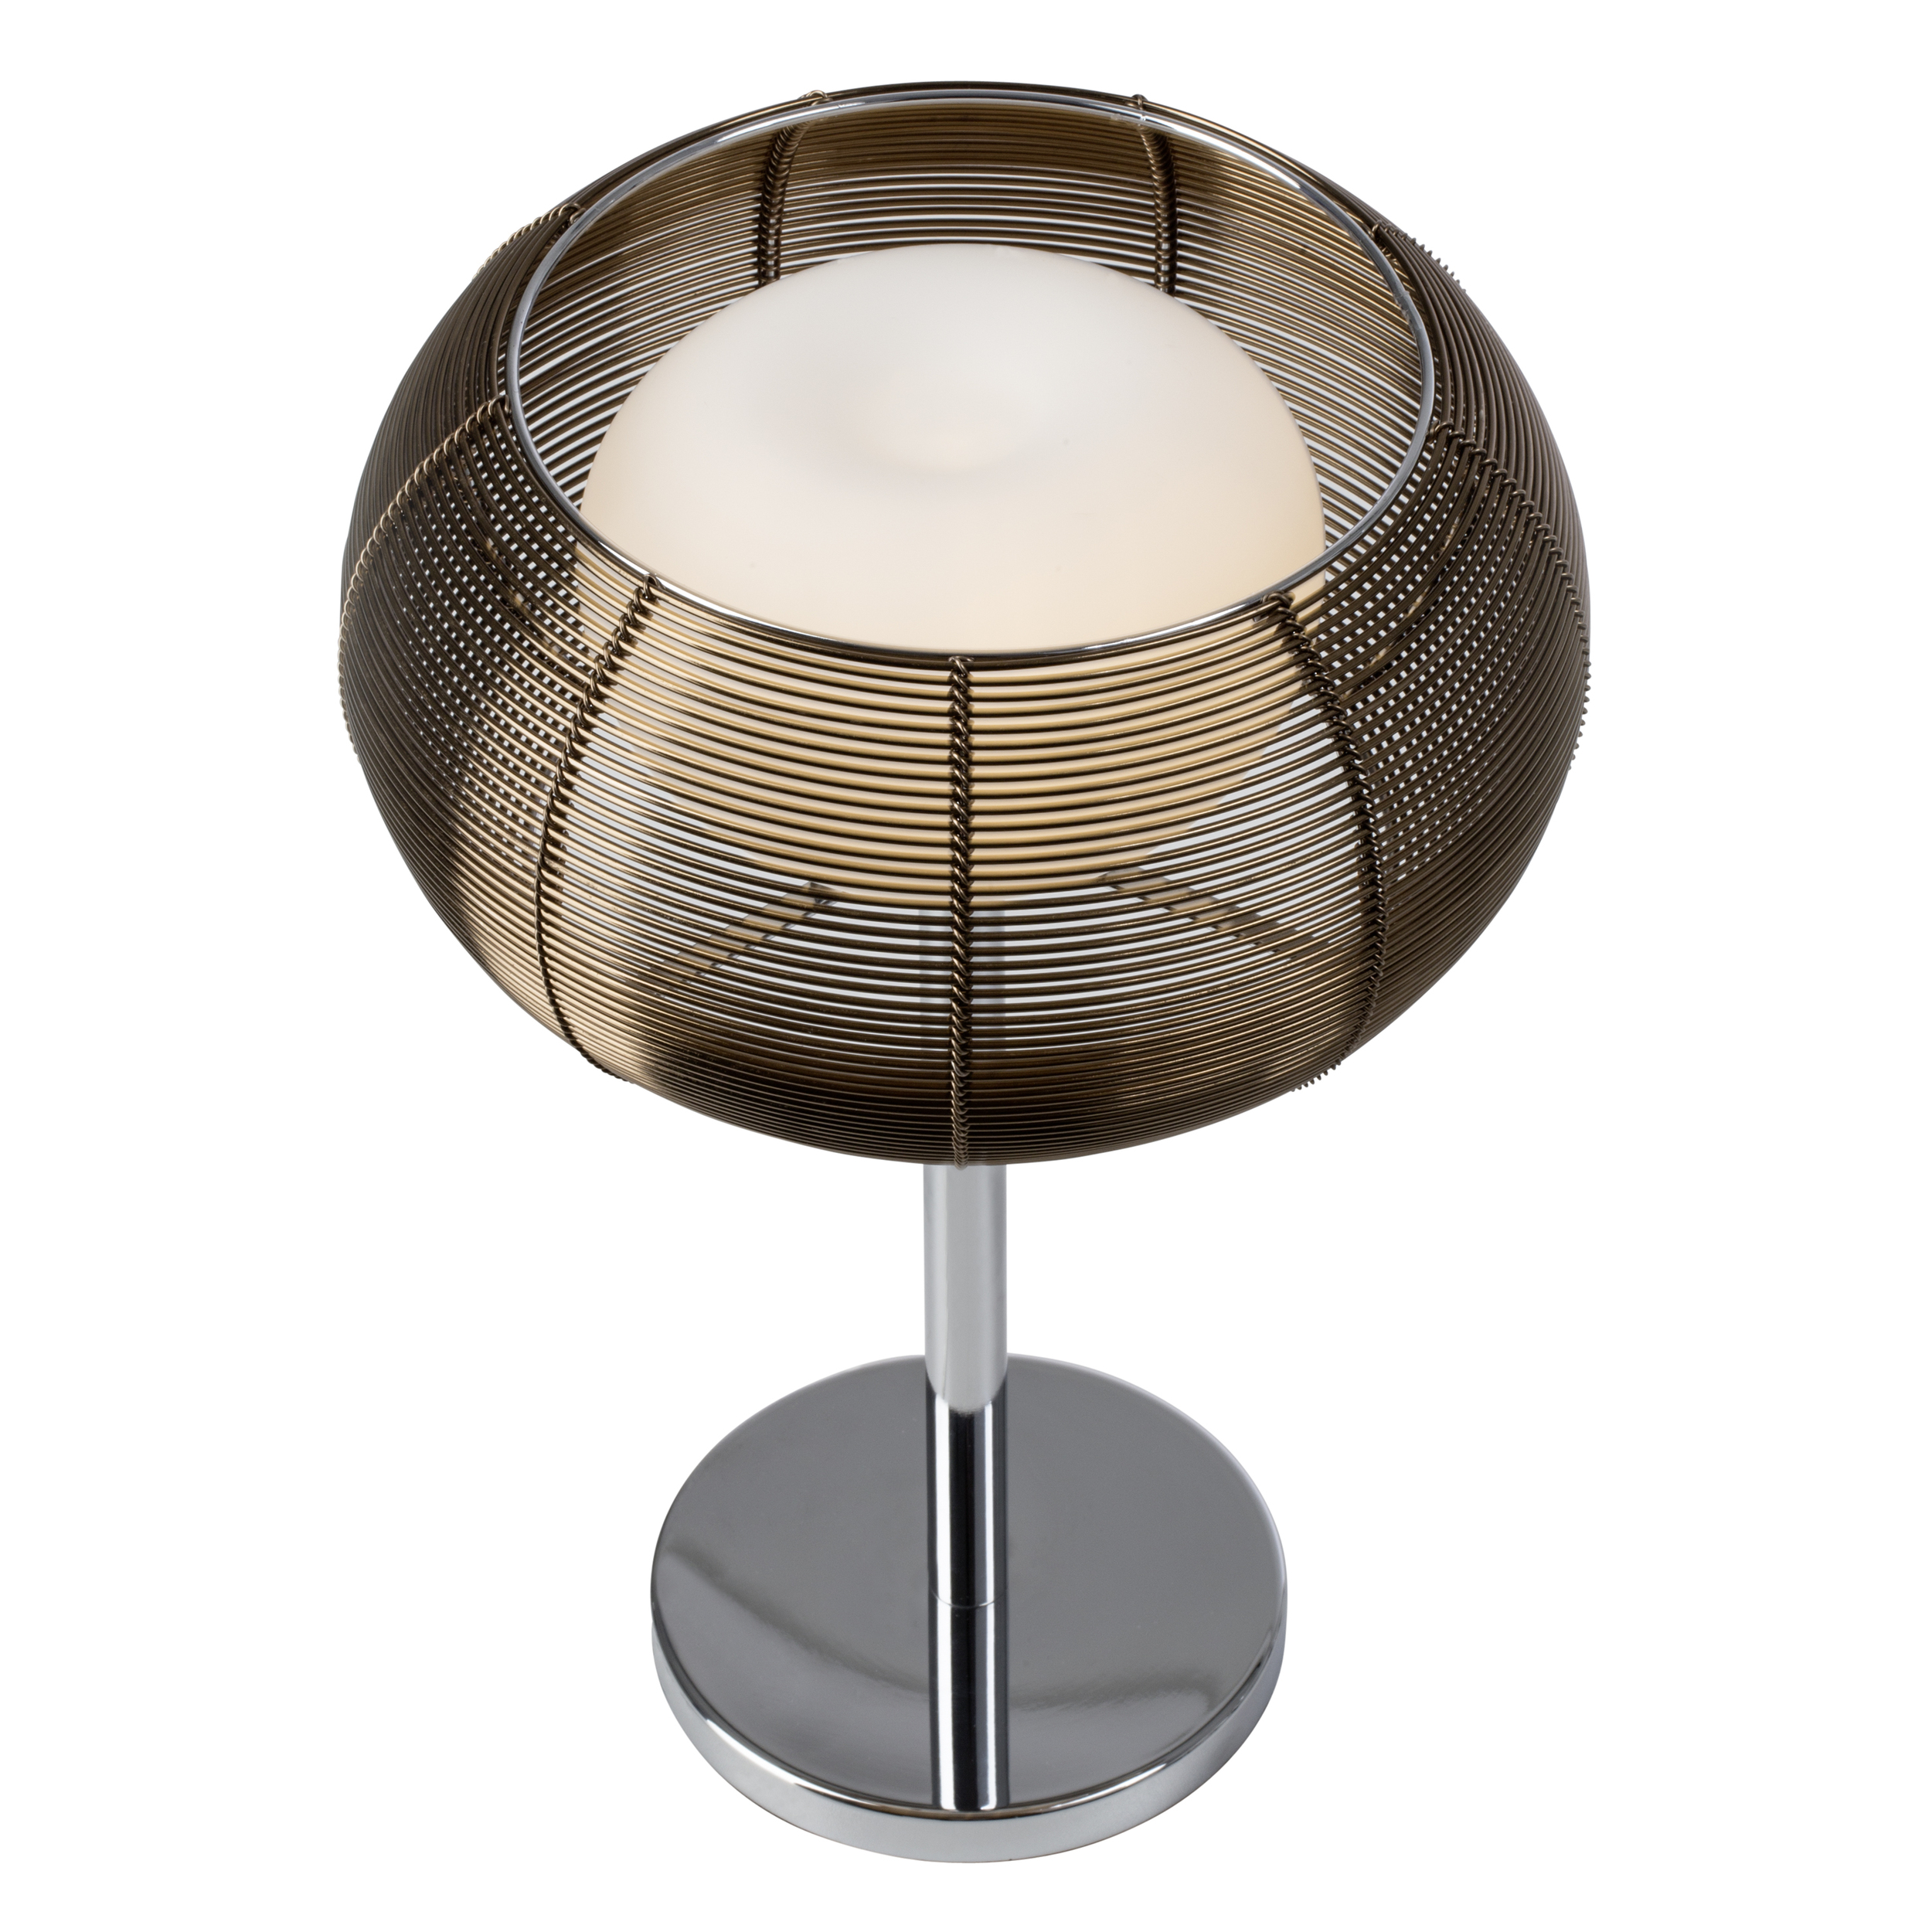 Tischleuchten Relax bronze/chrom Metall/Glas